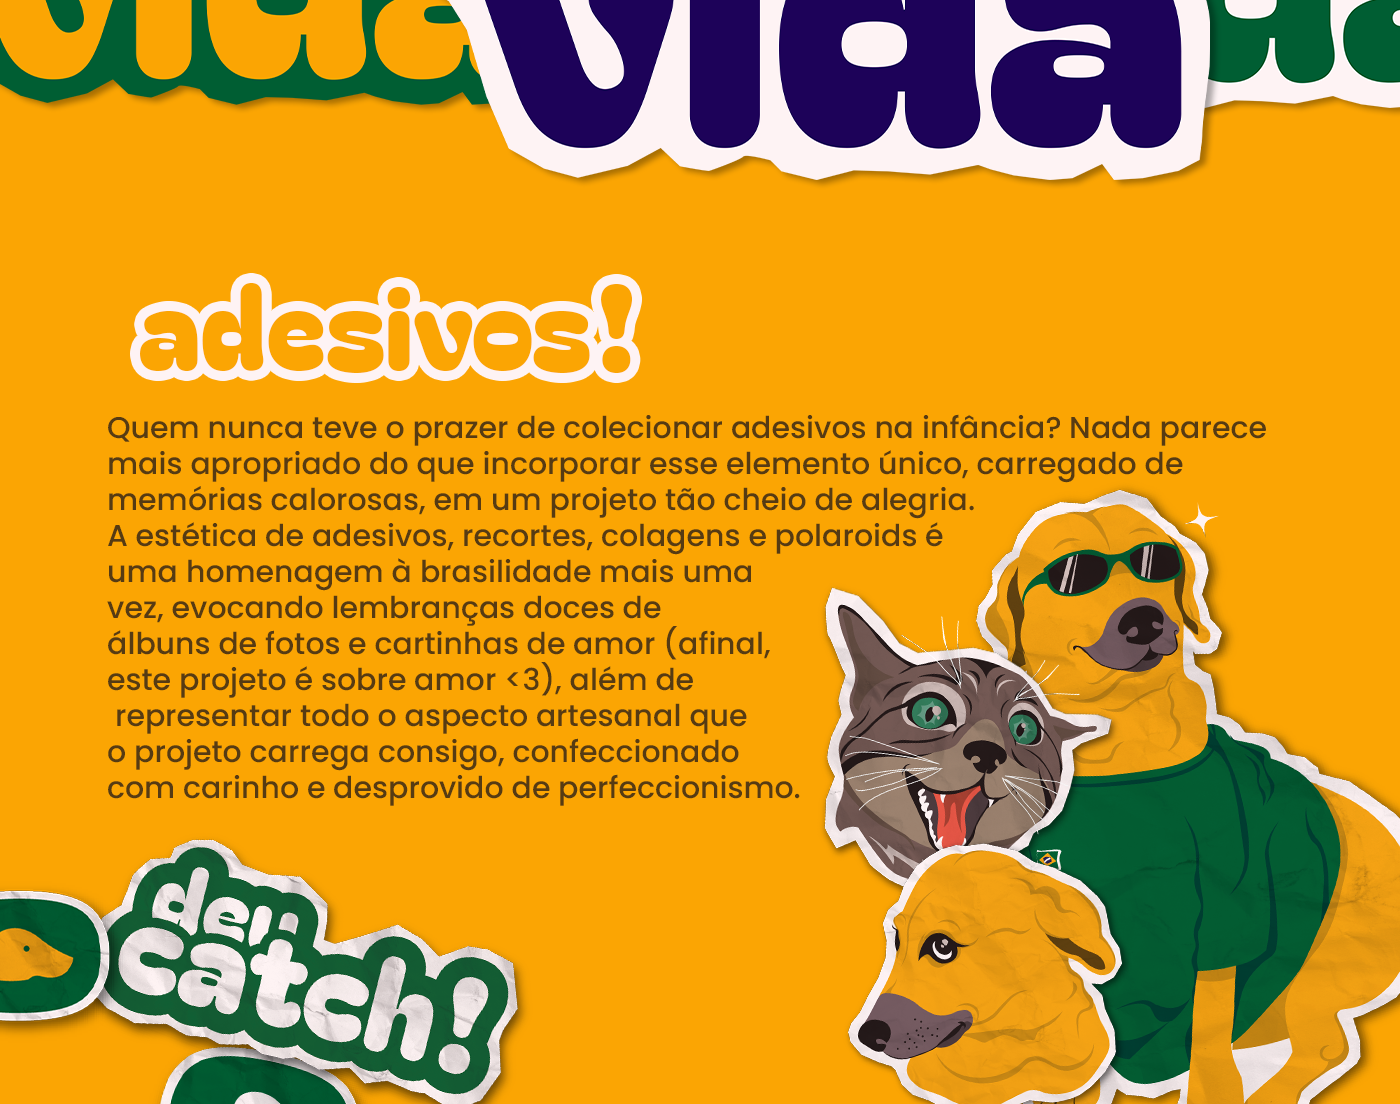 identidade visual visualidentity brand identity design logo Ilustração adoção animal site UI/UX